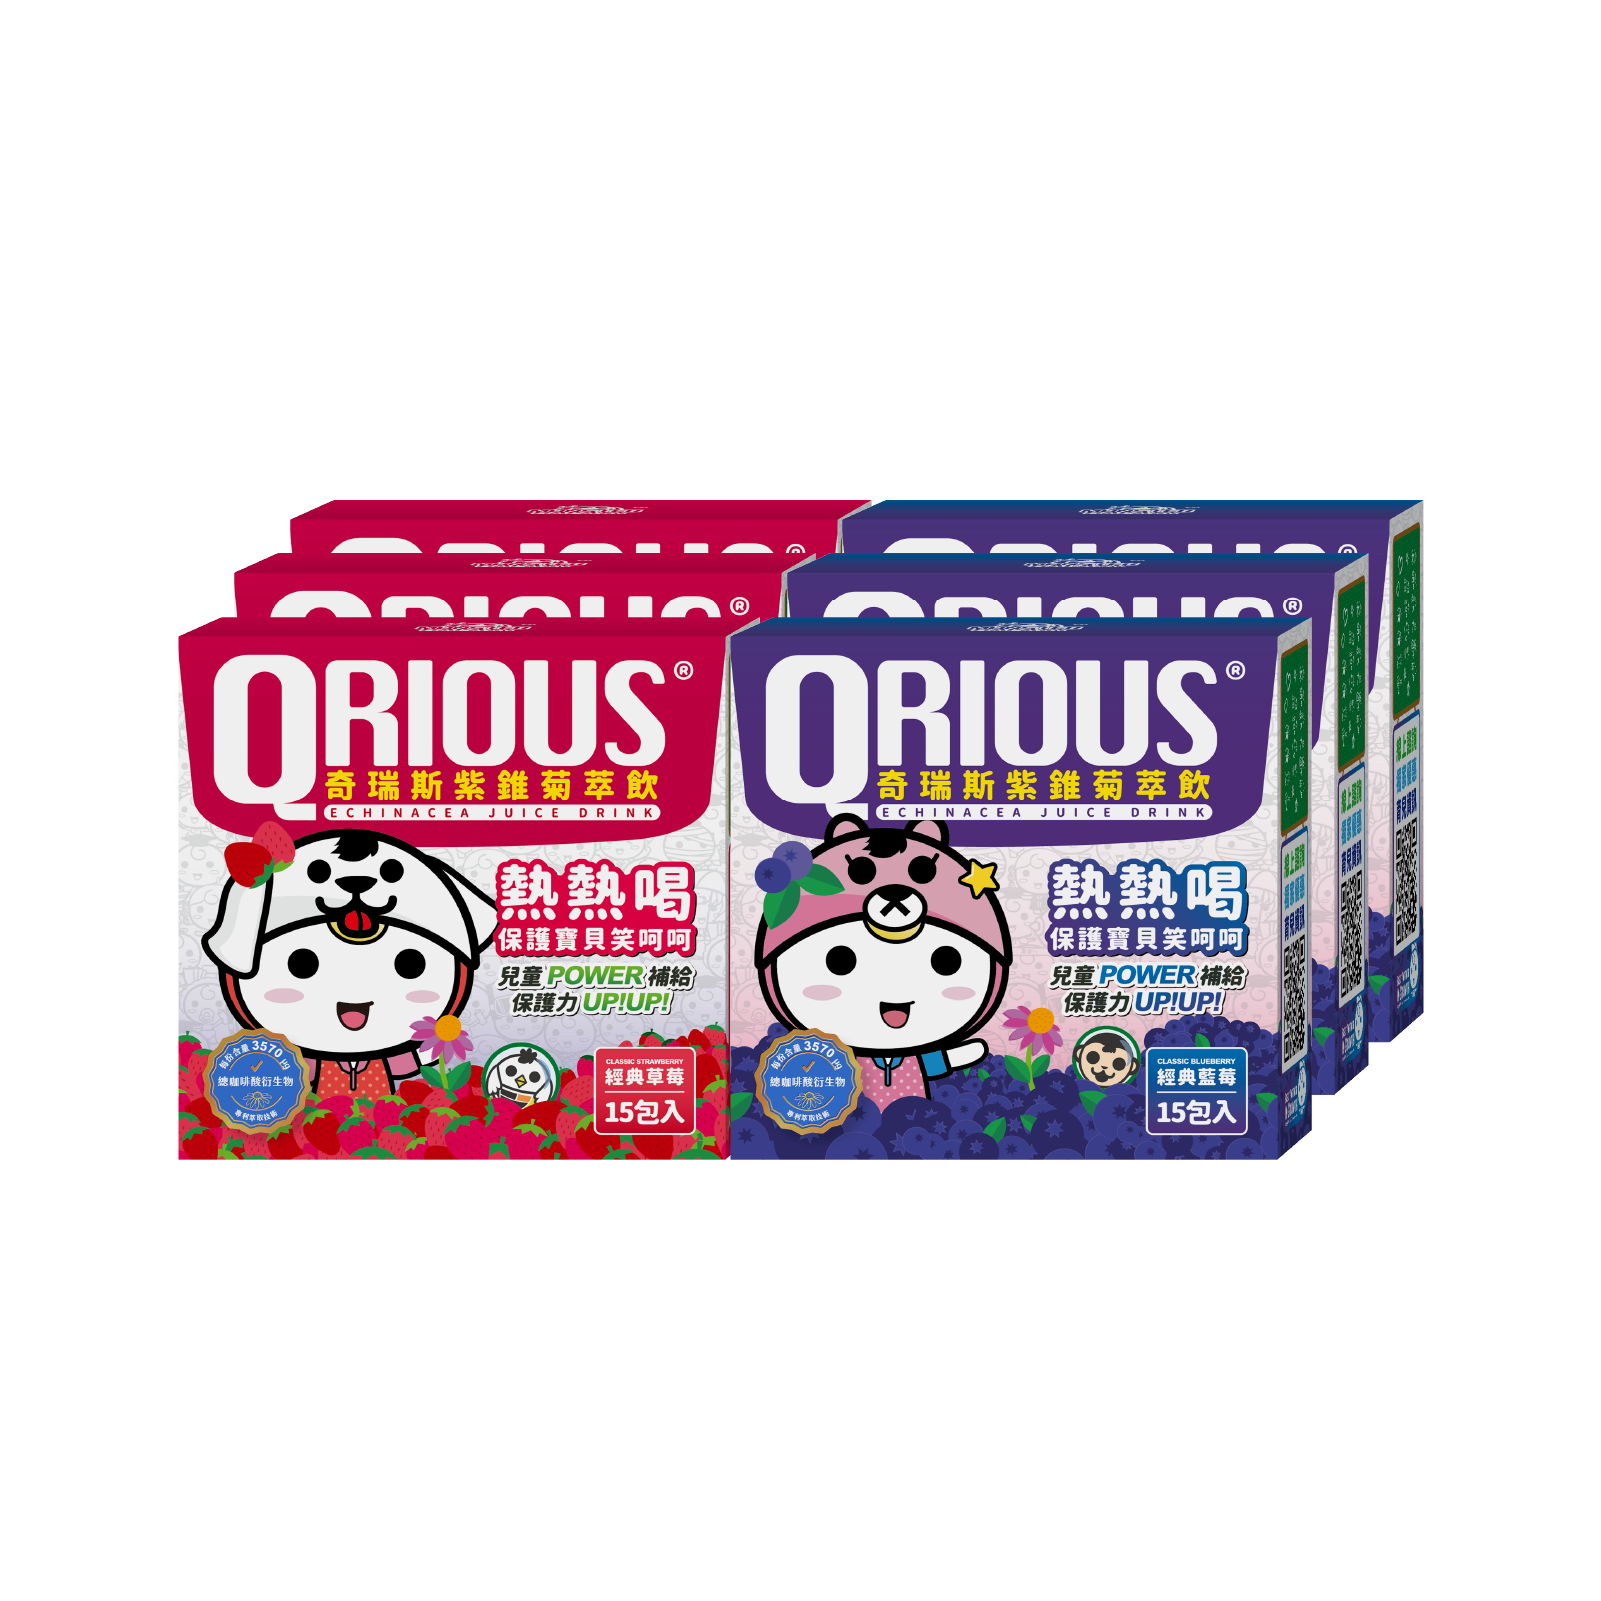 【領券再折扣】調整體質QRIOUS®奇瑞斯紫錐菊/紫錐花萃飲-草莓+藍莓(6盒)